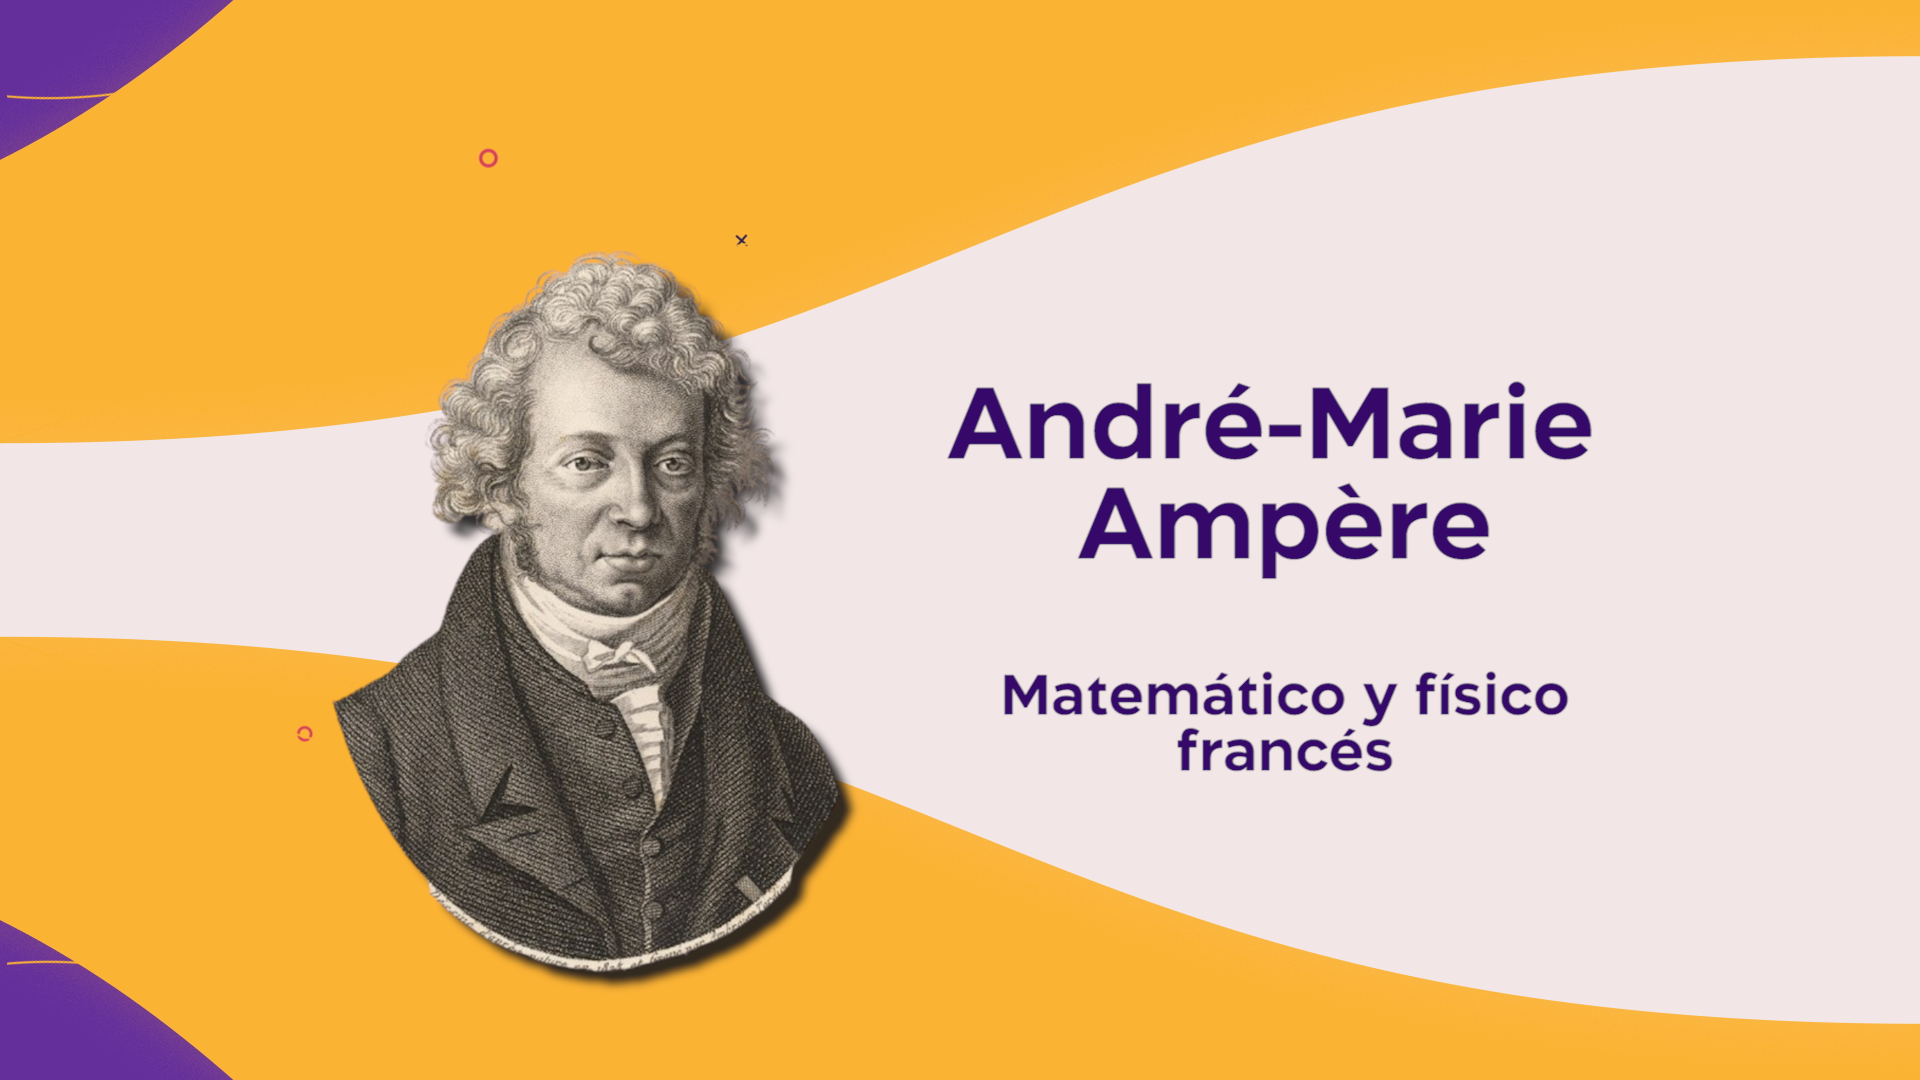 André-Marie Ampère, creador de varios conceptos claves en la electricidad en el siglo XIX.